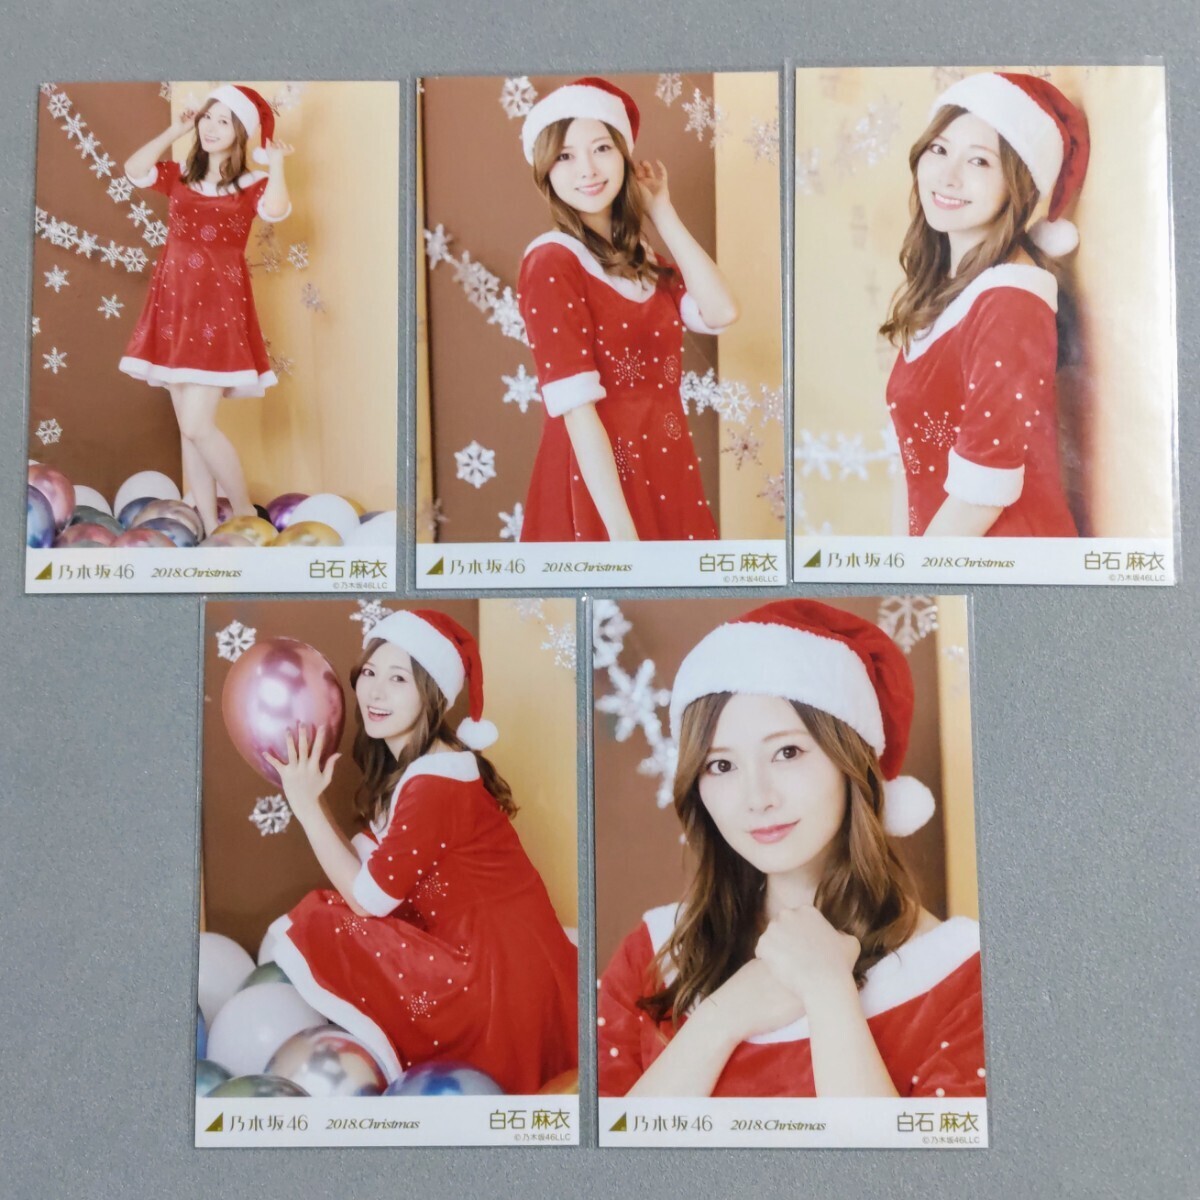 乃木坂46 白石麻衣 2018 Christmas 生写真 5枚セットの画像1